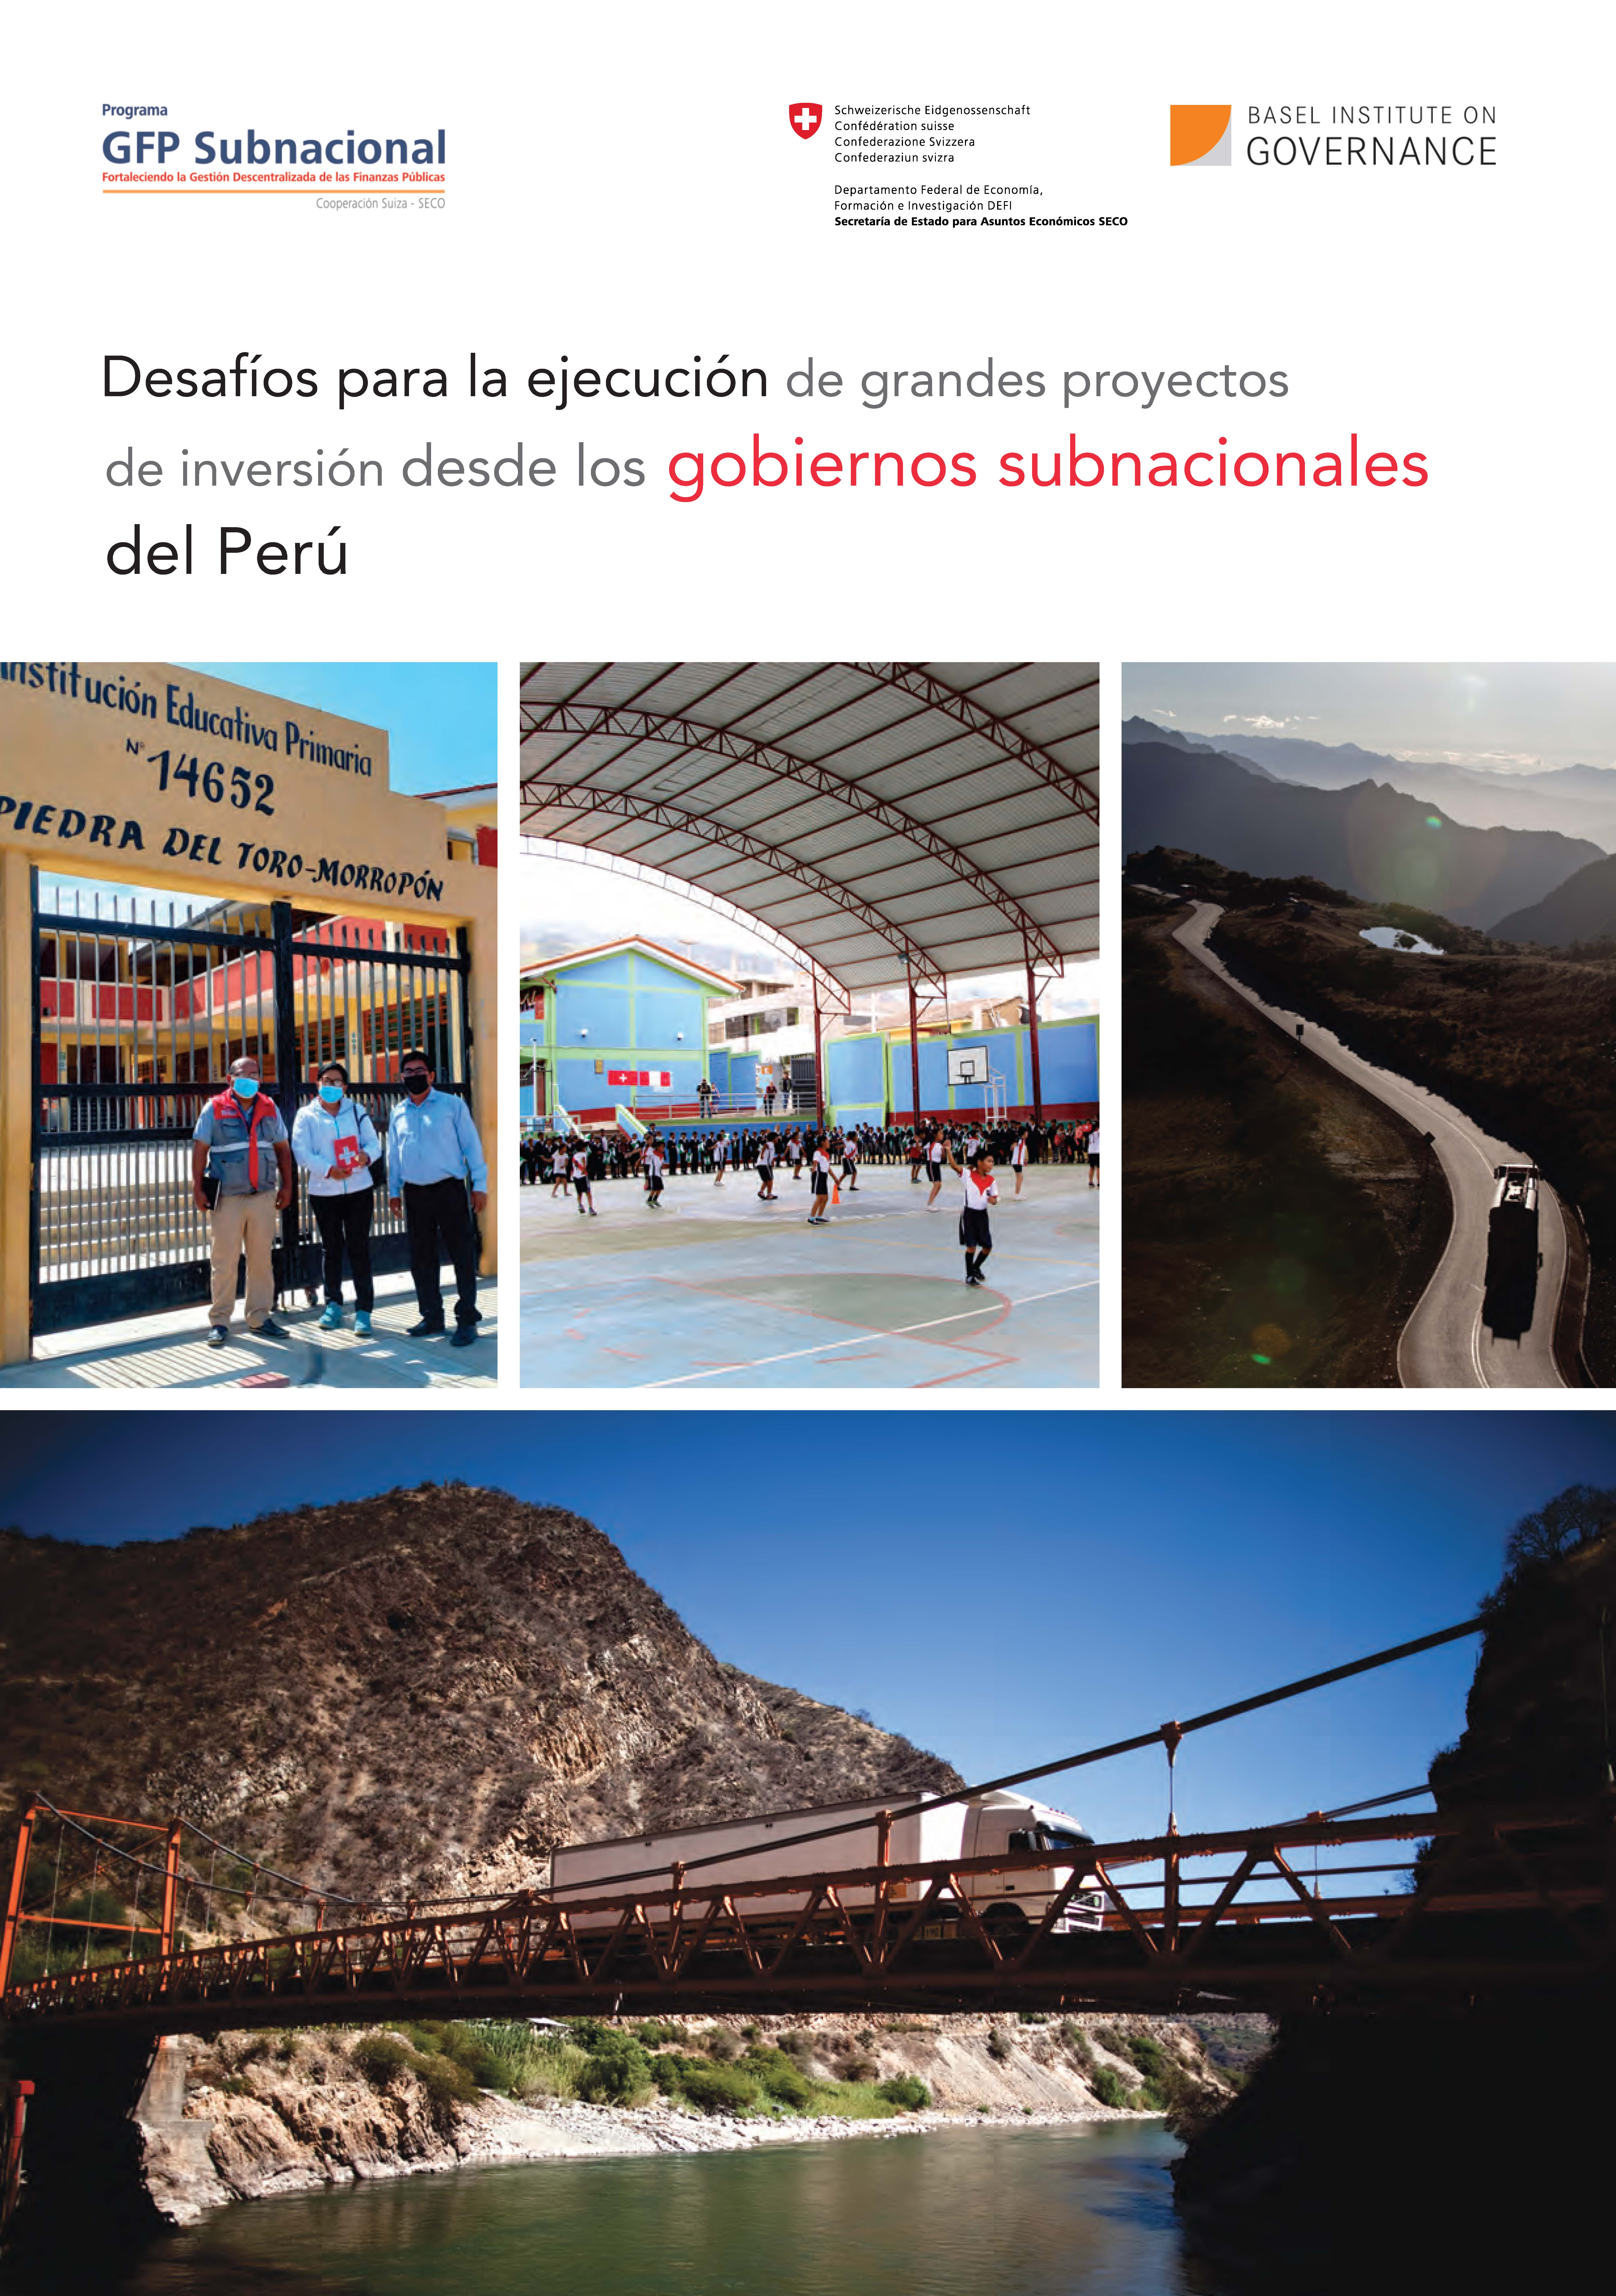 Cover page of Desafíos para la ejecución de grandes proyectos de inversión desde los gobiernos subnacionales del Perú